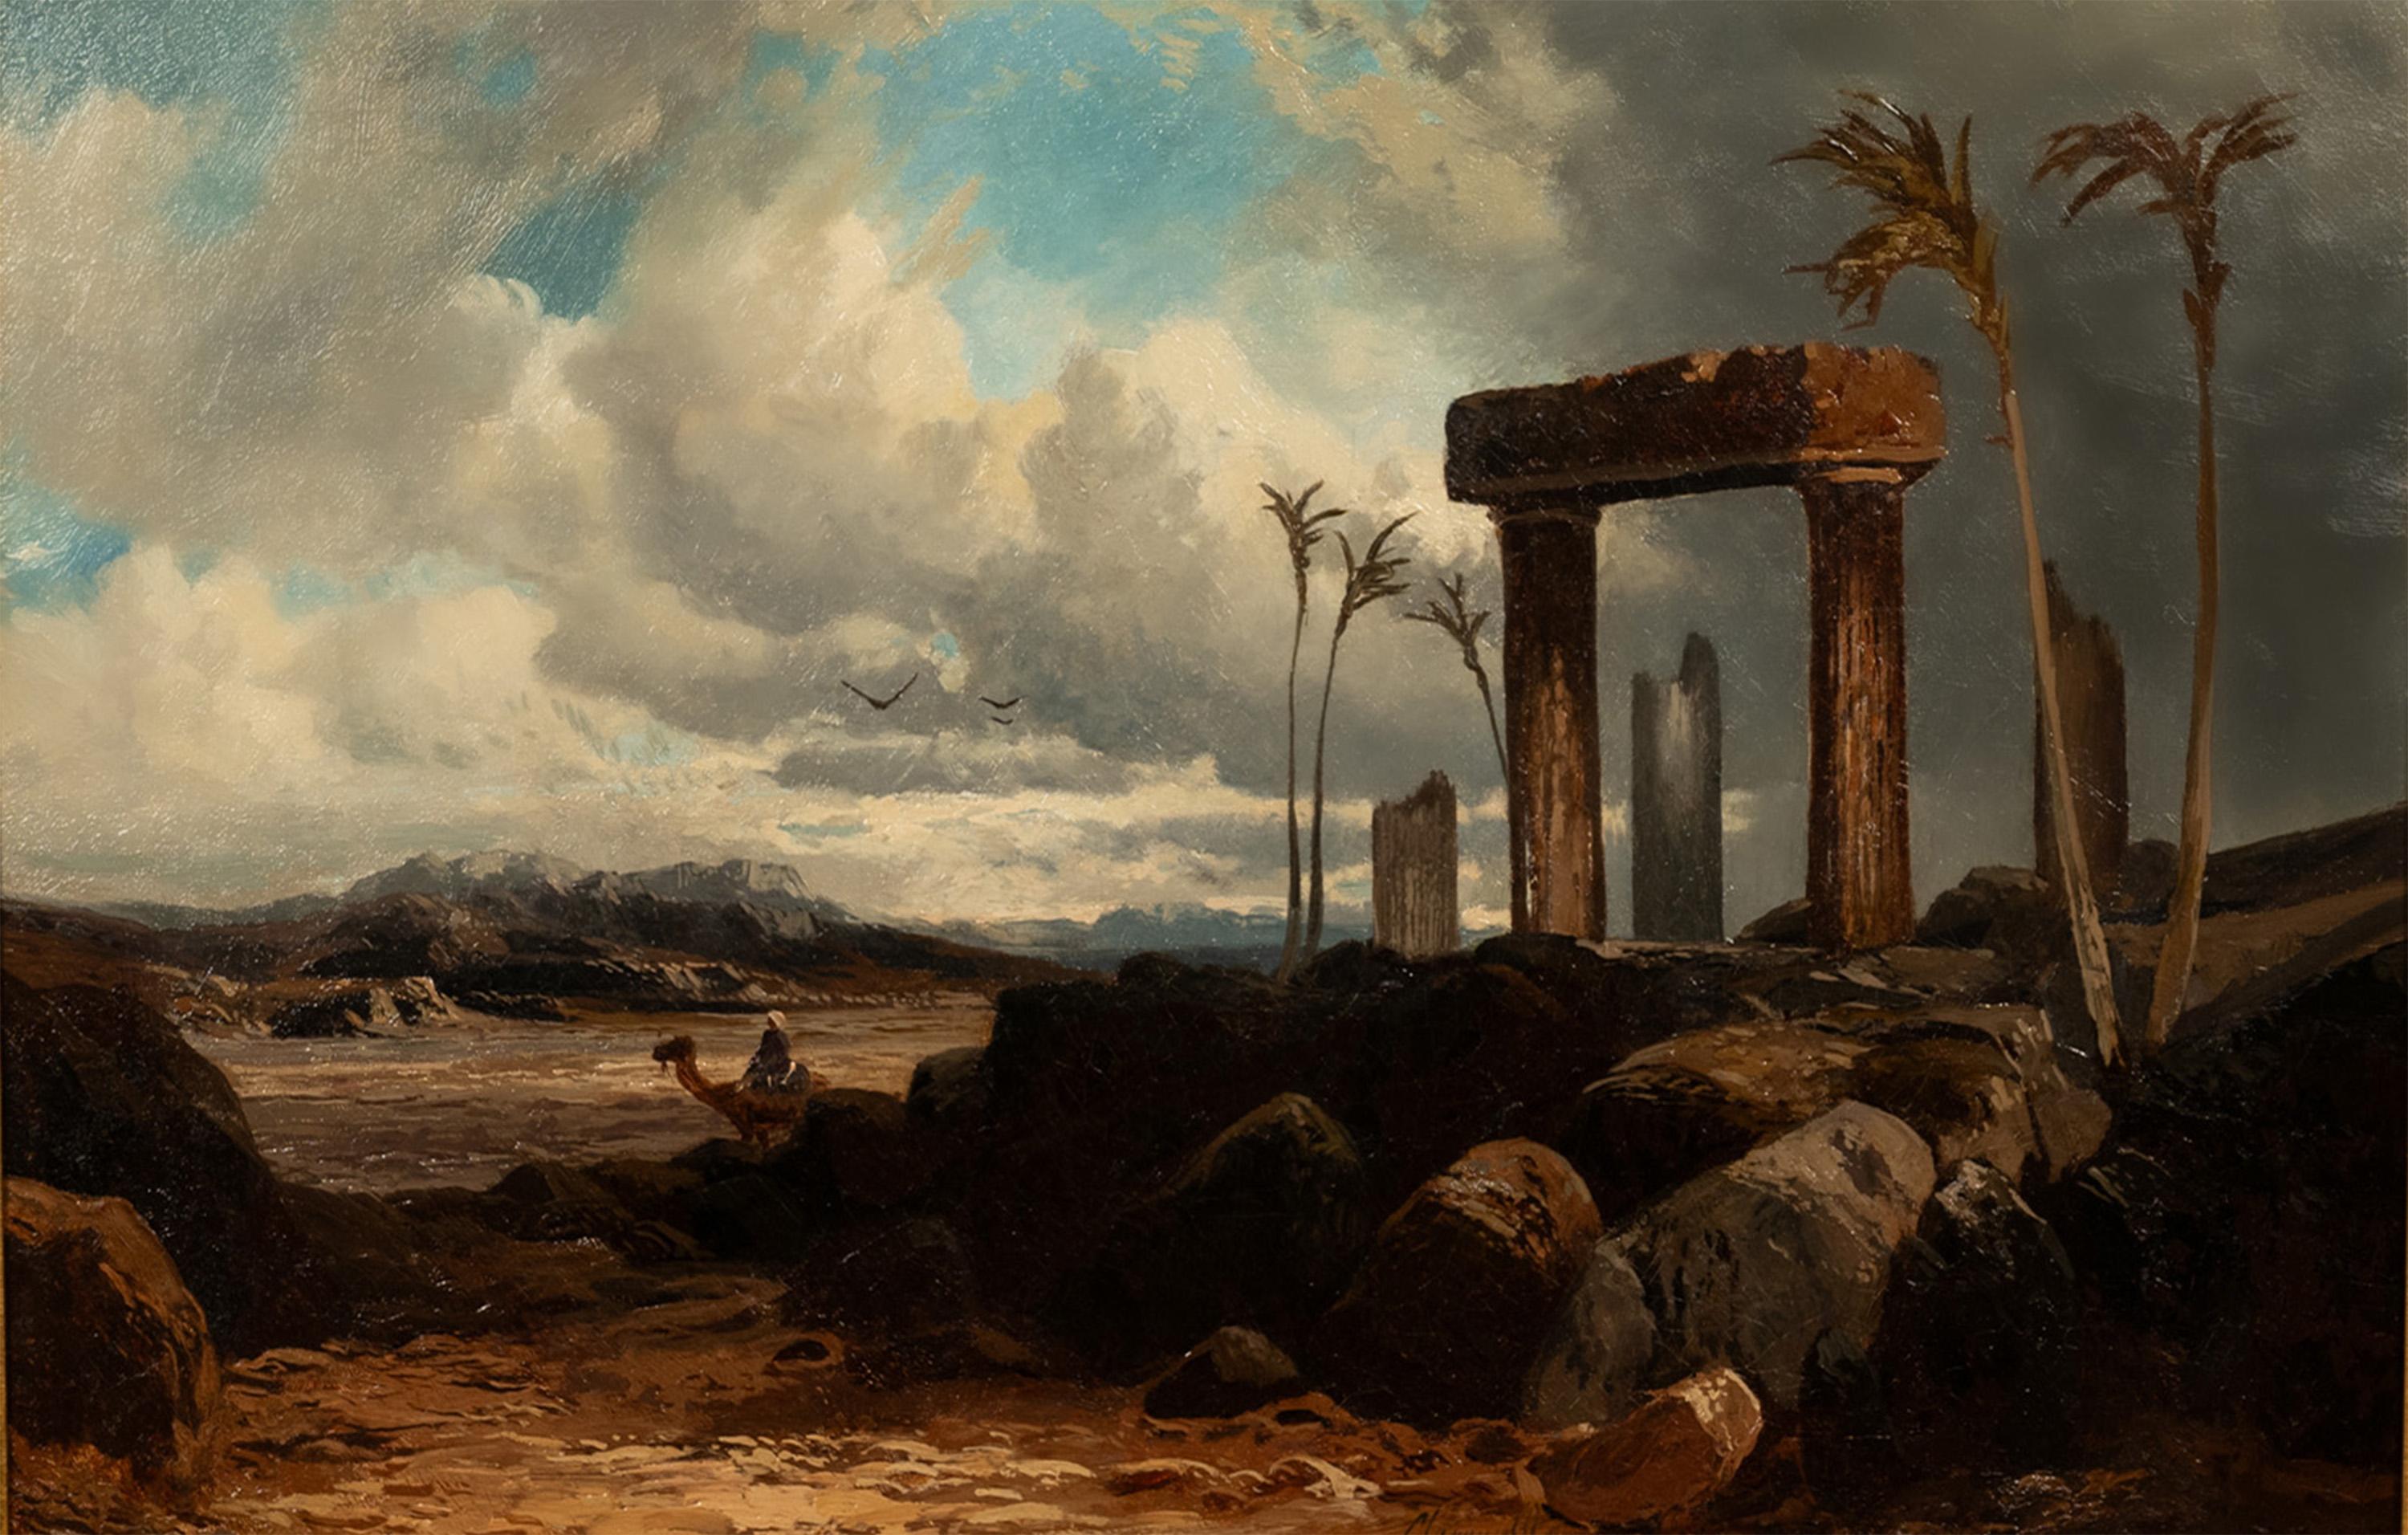 Eine feine und wichtige, große 19. Jahrhundert Öl auf Leinwand orientalischen Gemälde von dem talentierten Maler Clarence Henry Roe, (1850-1909), das Gemälde zeigt die historische Stadt Palmyra, Syrien, um 1880.
Dieses Gemälde zeigt Palmyra in